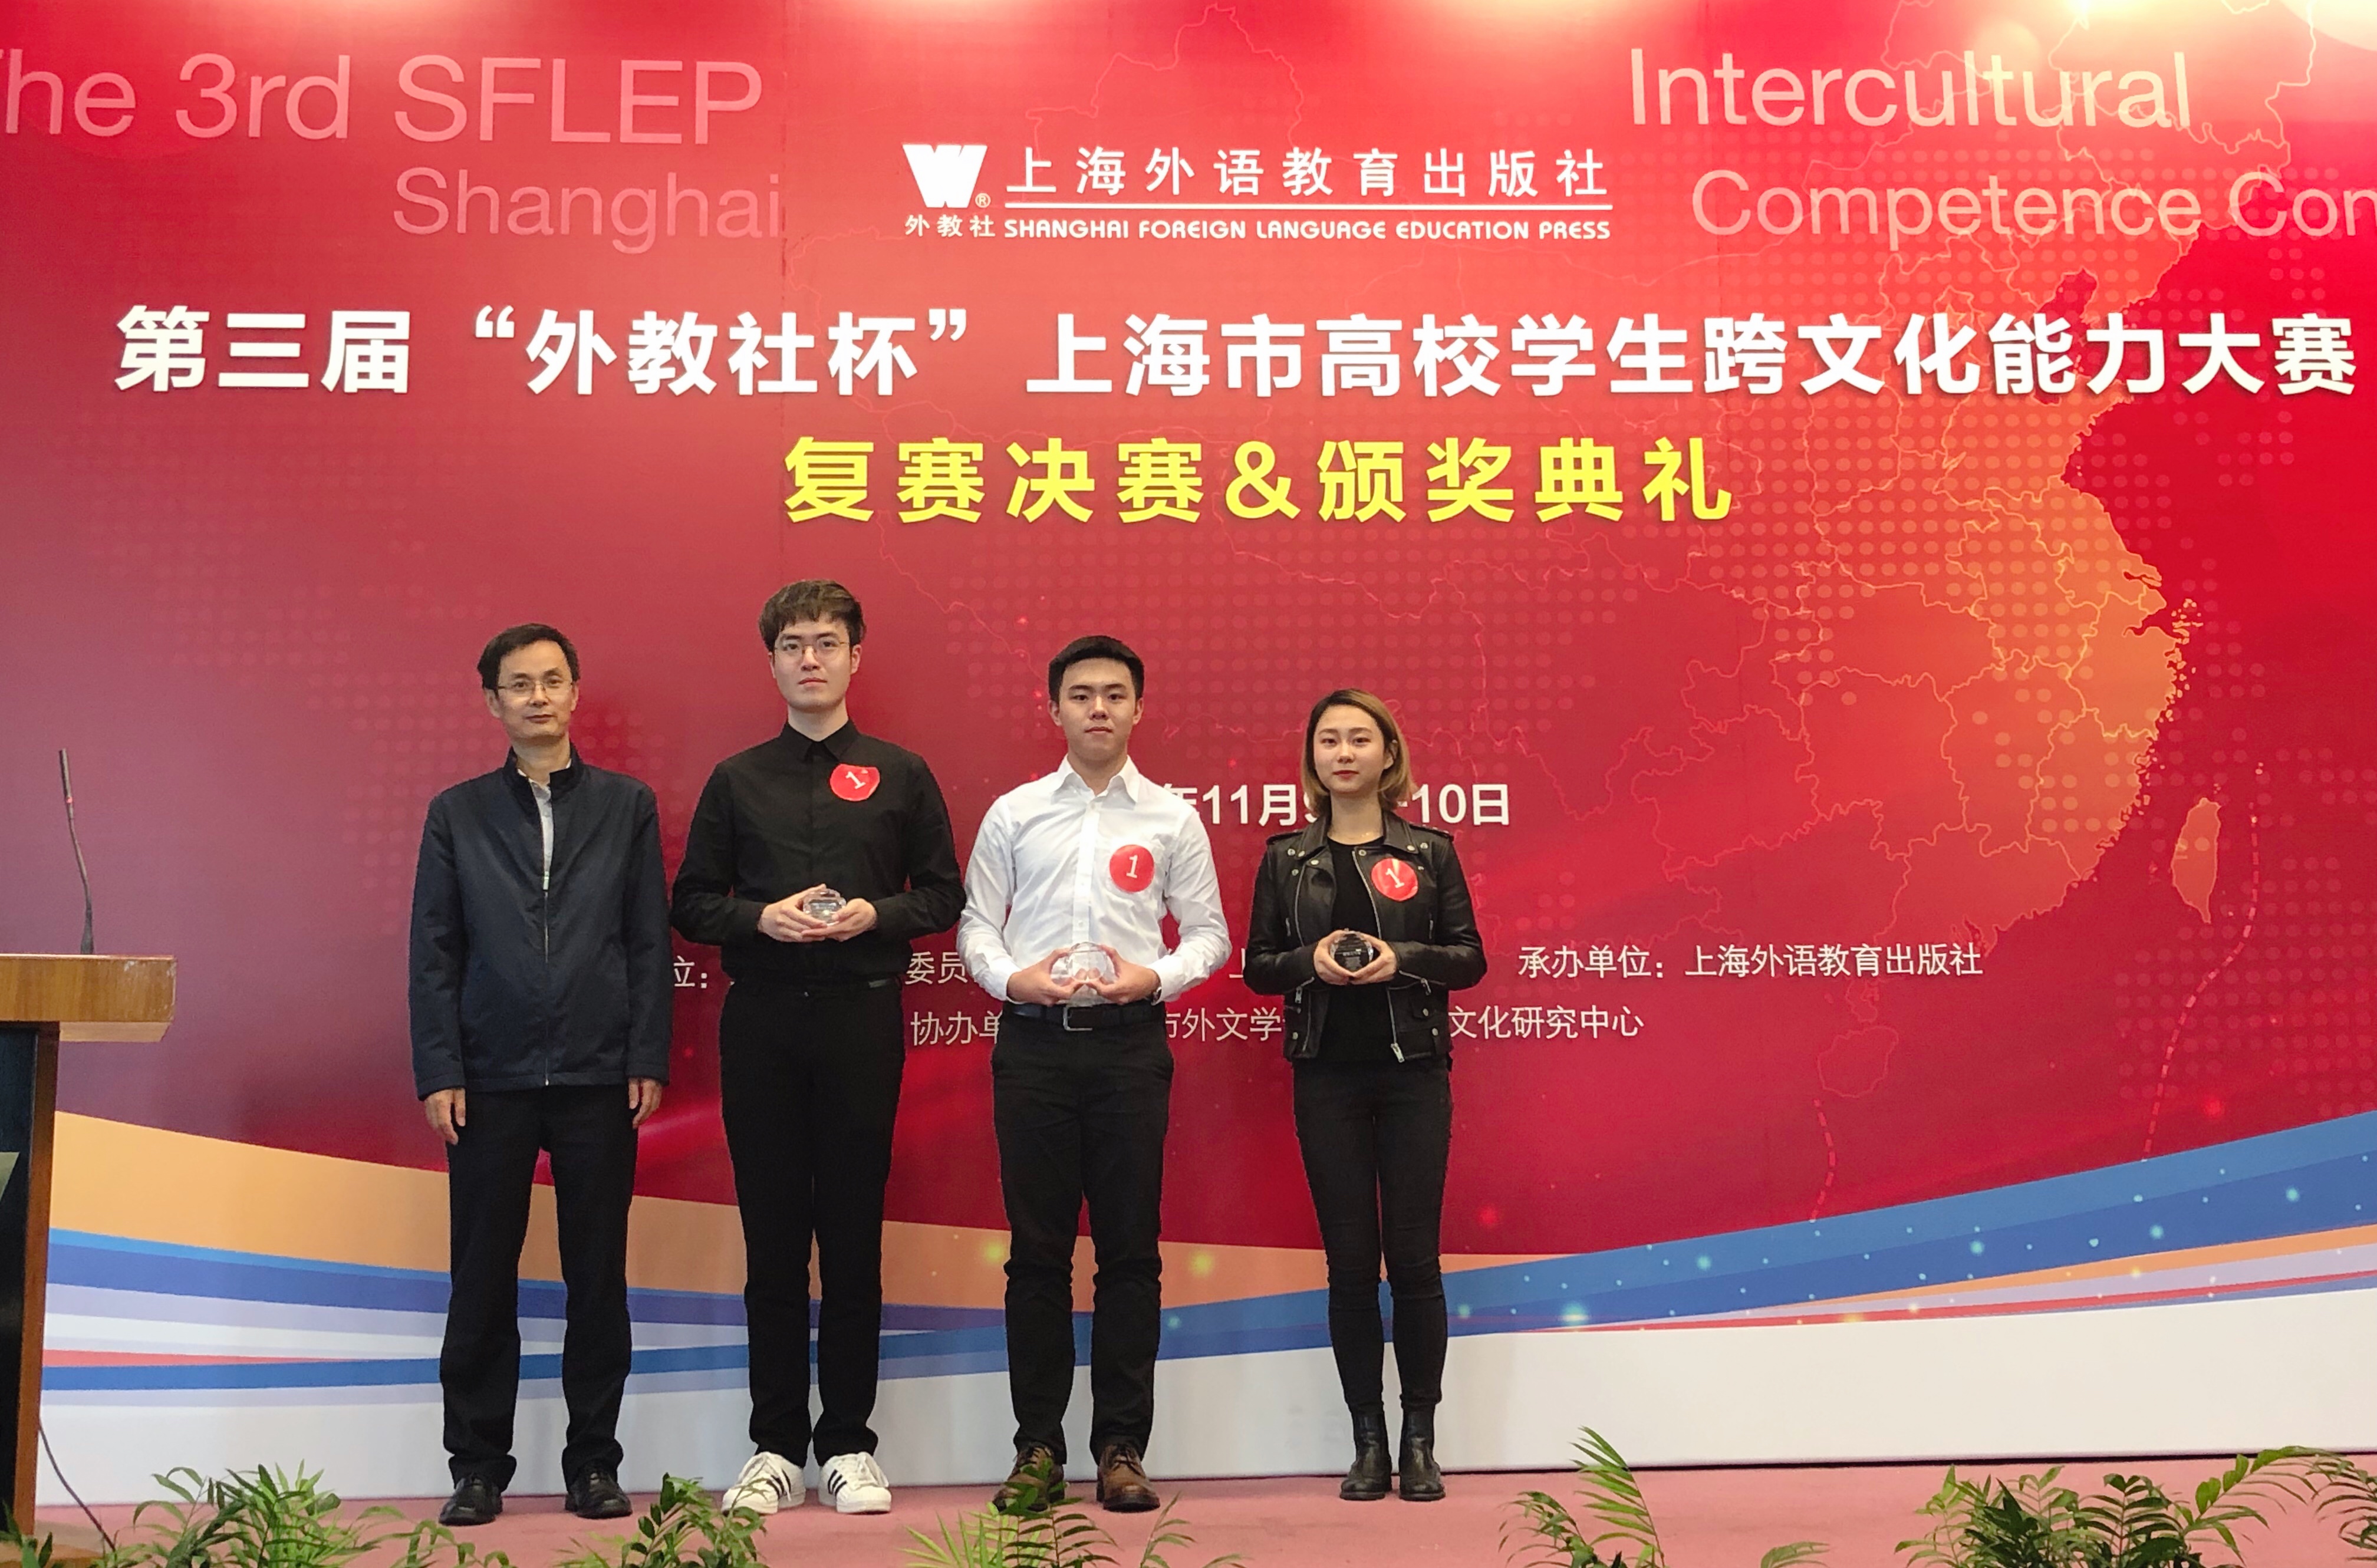 图为学生在第三届外教社杯上海市高校学生跨文化能力大赛上获奖